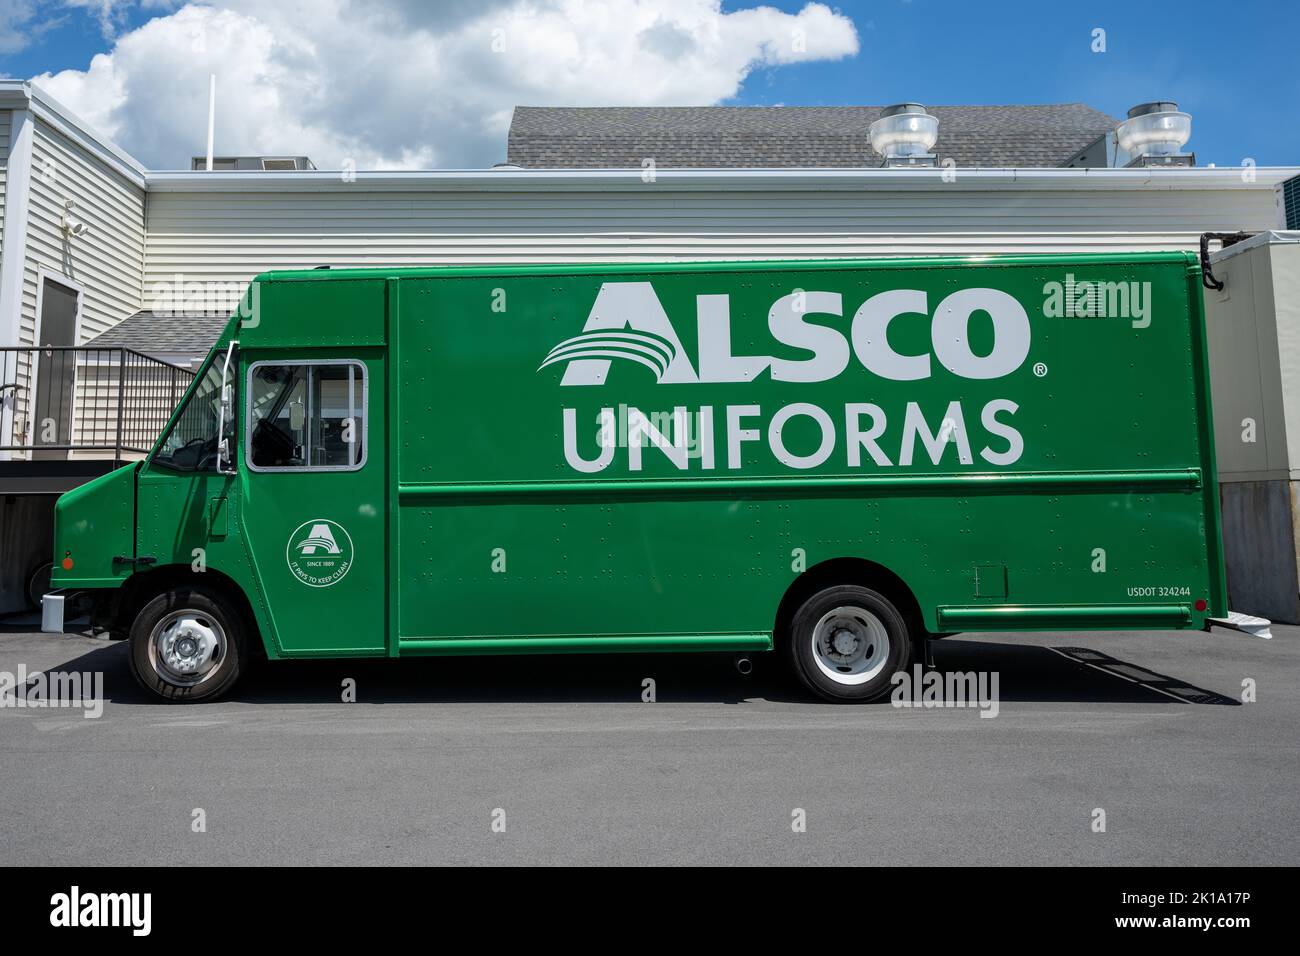 Canandaigua, NY - 29. Juli 2022: Alsco Uniforms Truck wird während der Lieferung geparkt. Alsco ist ein Anbieter von Wäsche- und einheitlichen Mietdienstleistungen Stockfoto